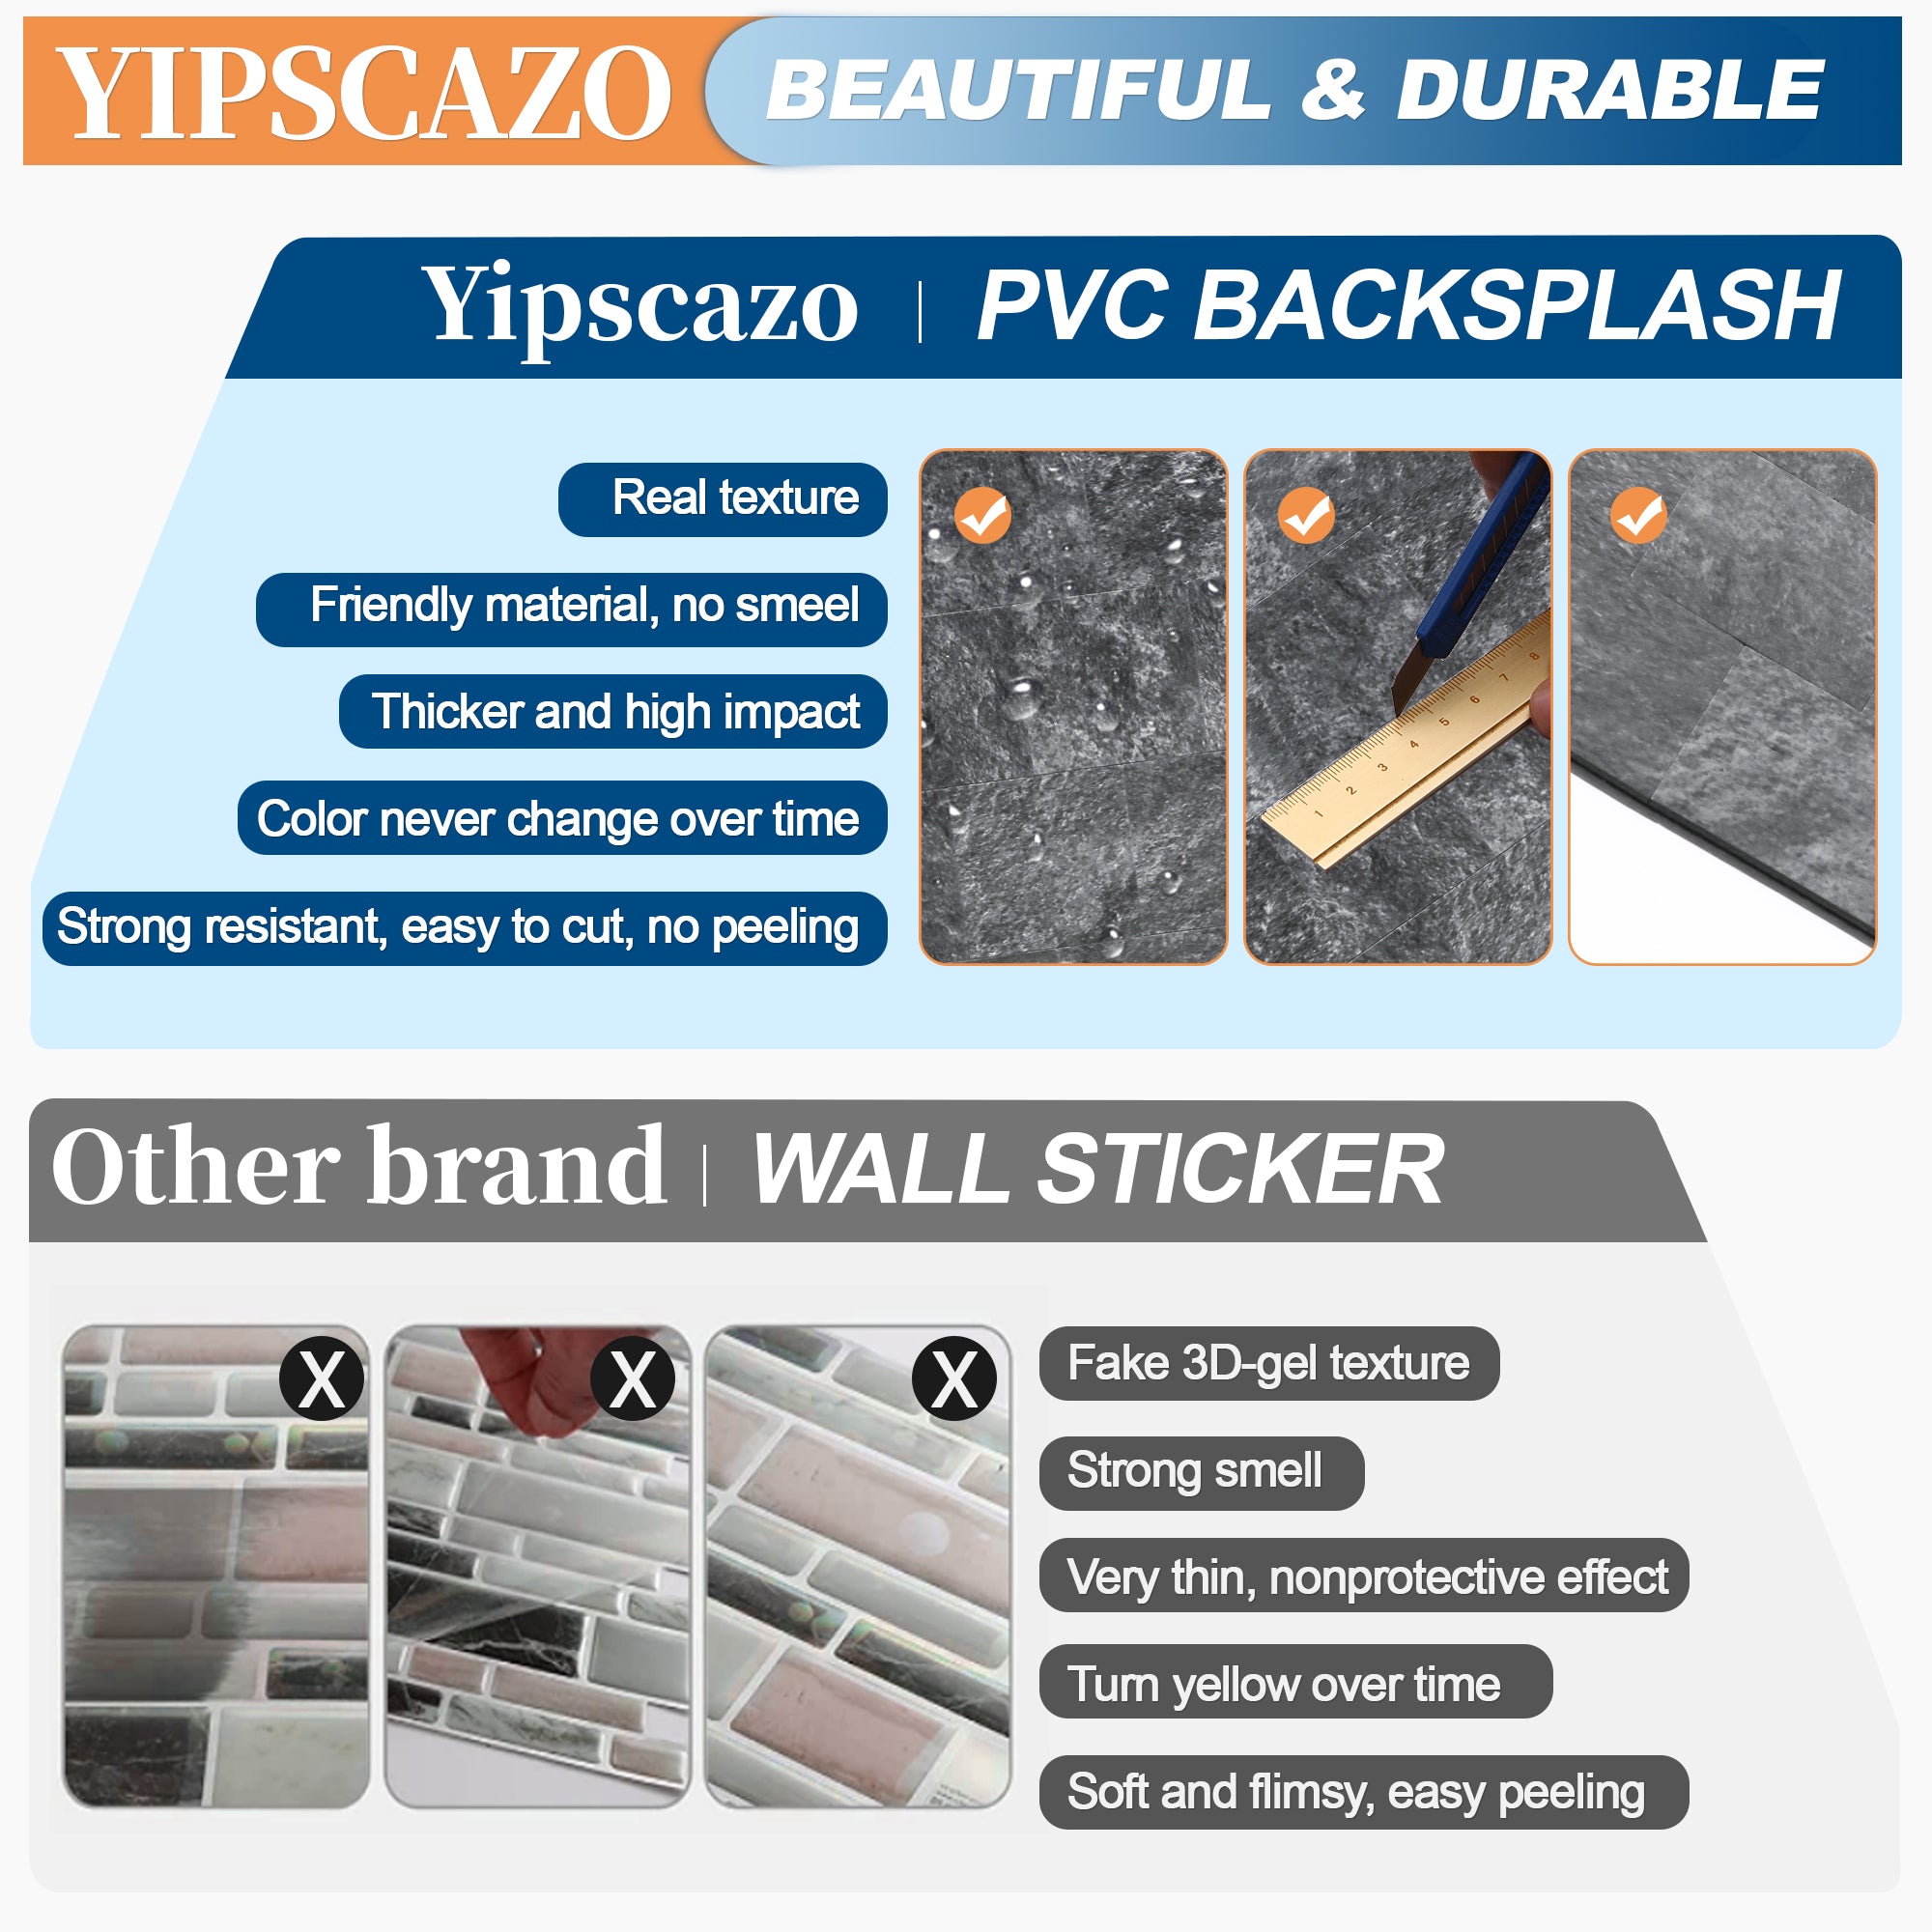 Yipscazo pvc backsplash tile